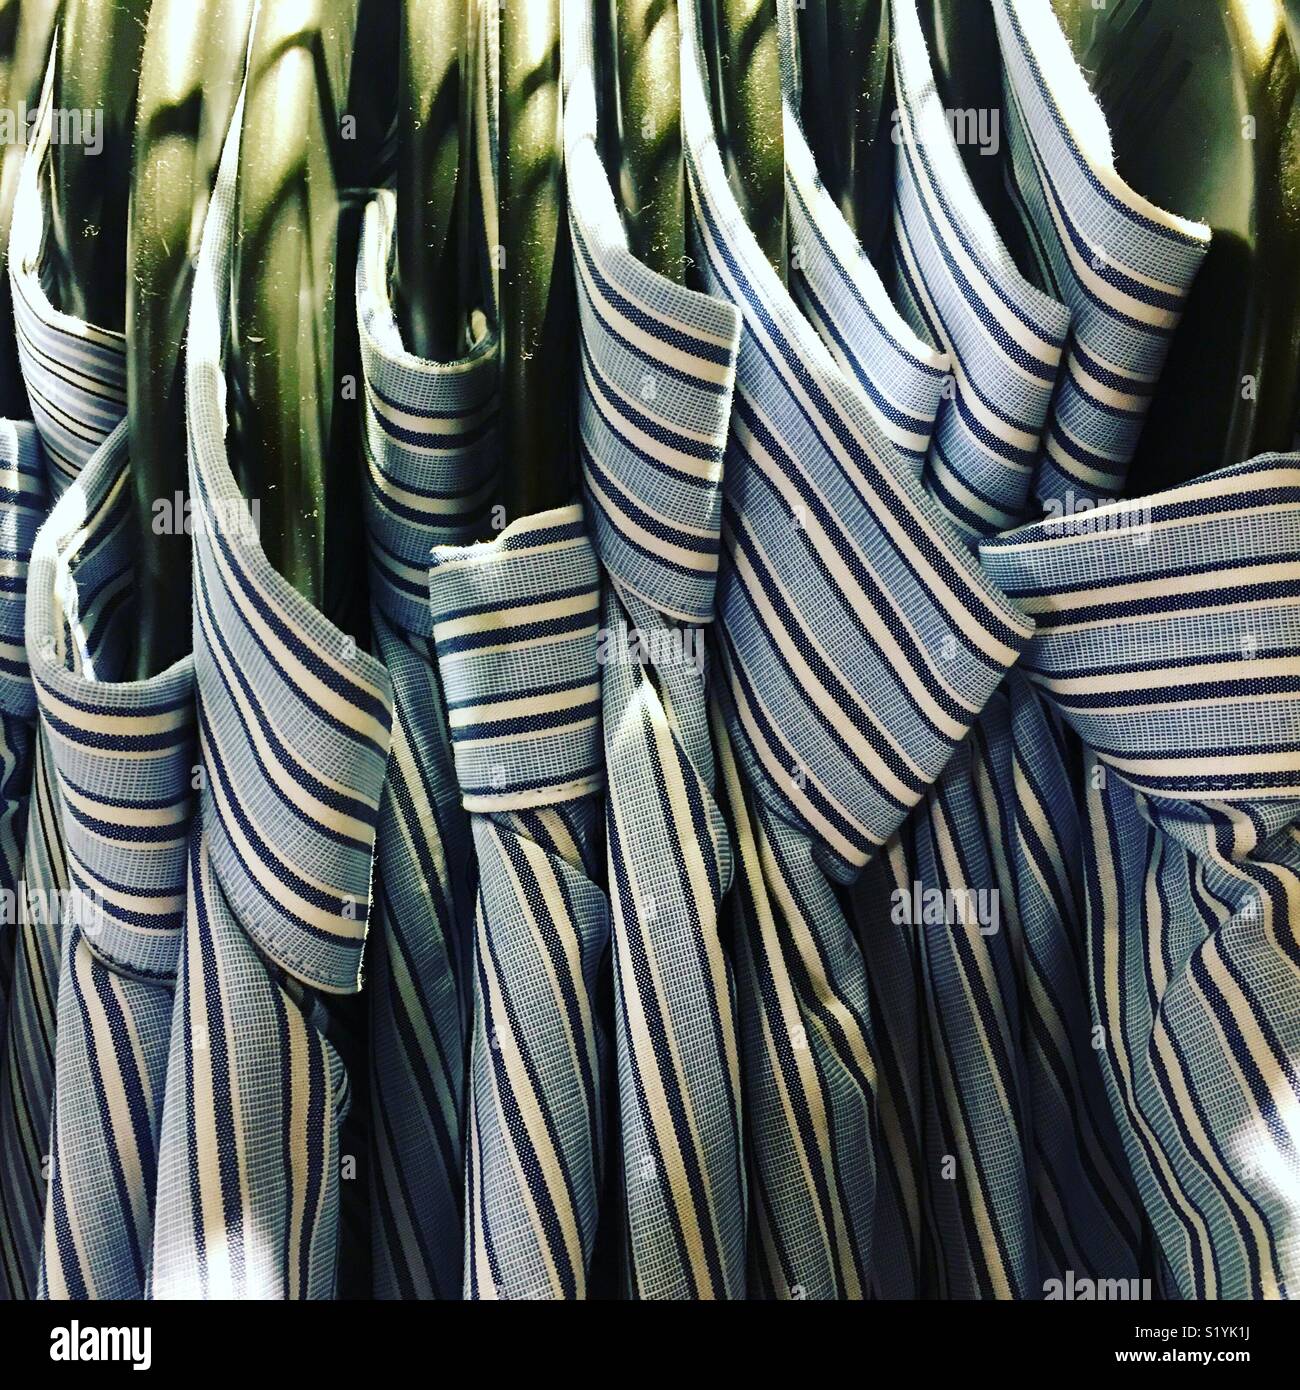 Rack de chemises sur des cintres. Banque D'Images